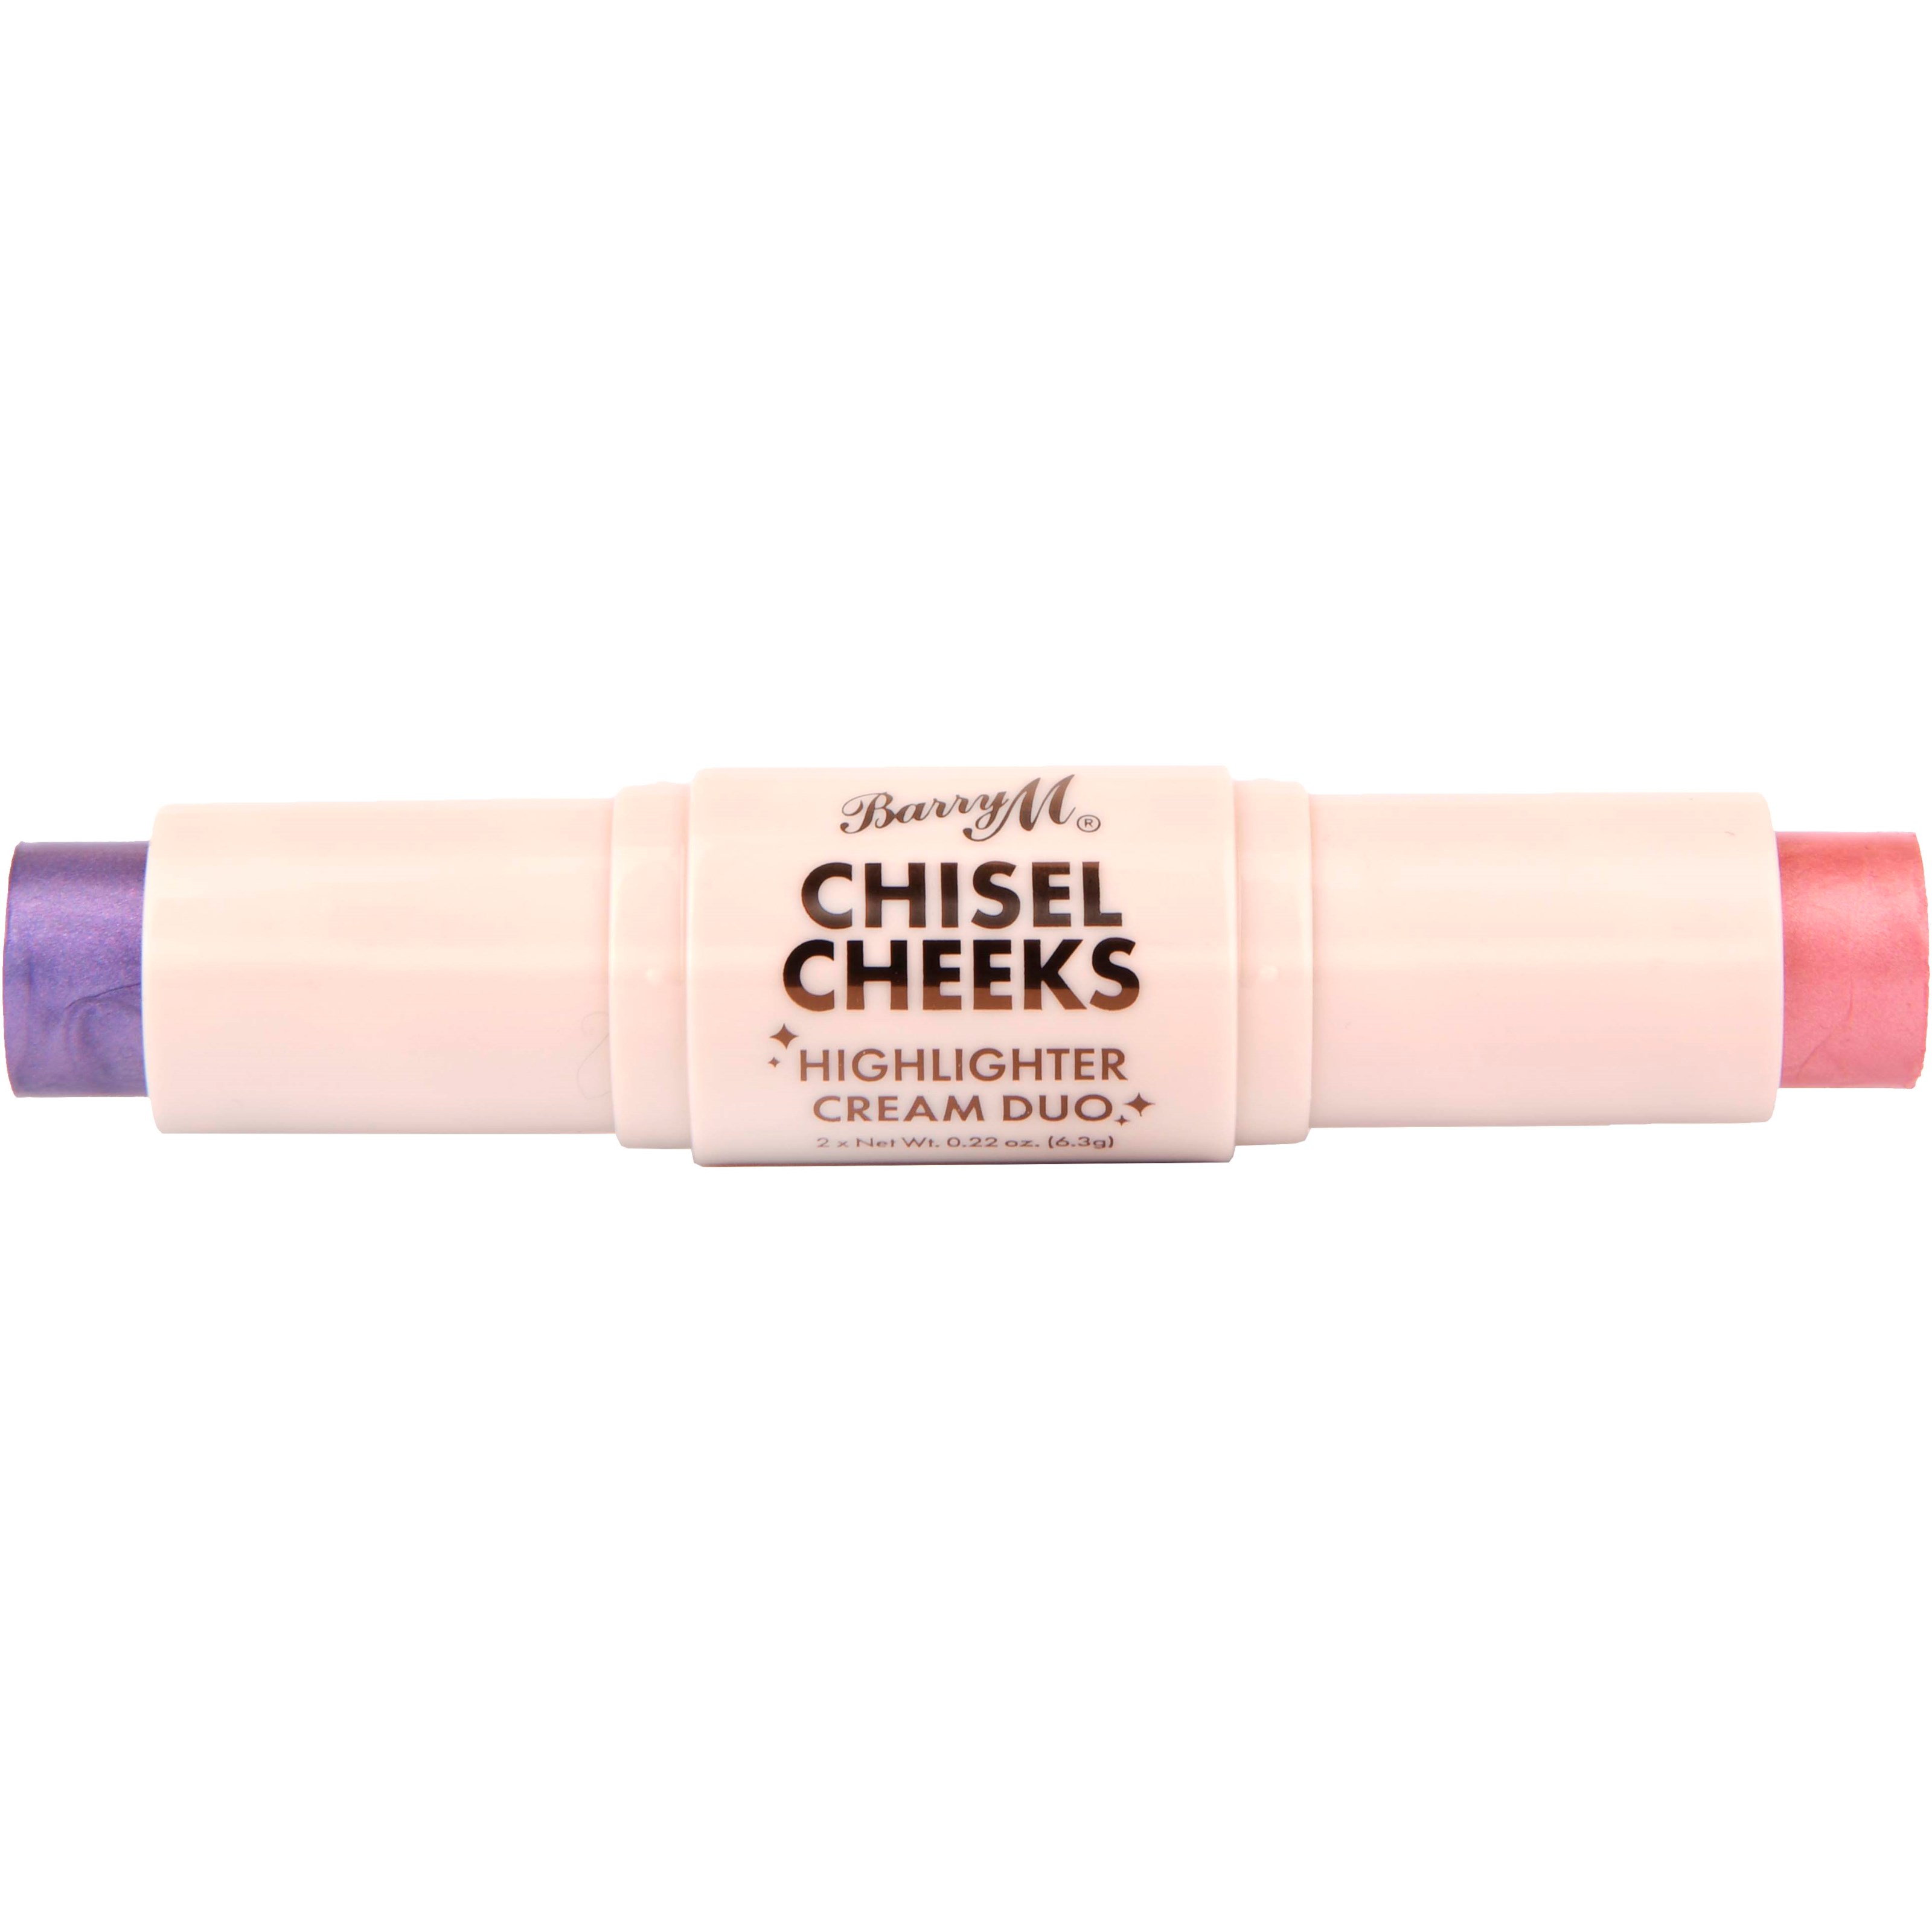 Zdjęcia - Puder i róż Barry M Chisel Cheeks Highlighter Cream Duo Lilac/Pink 